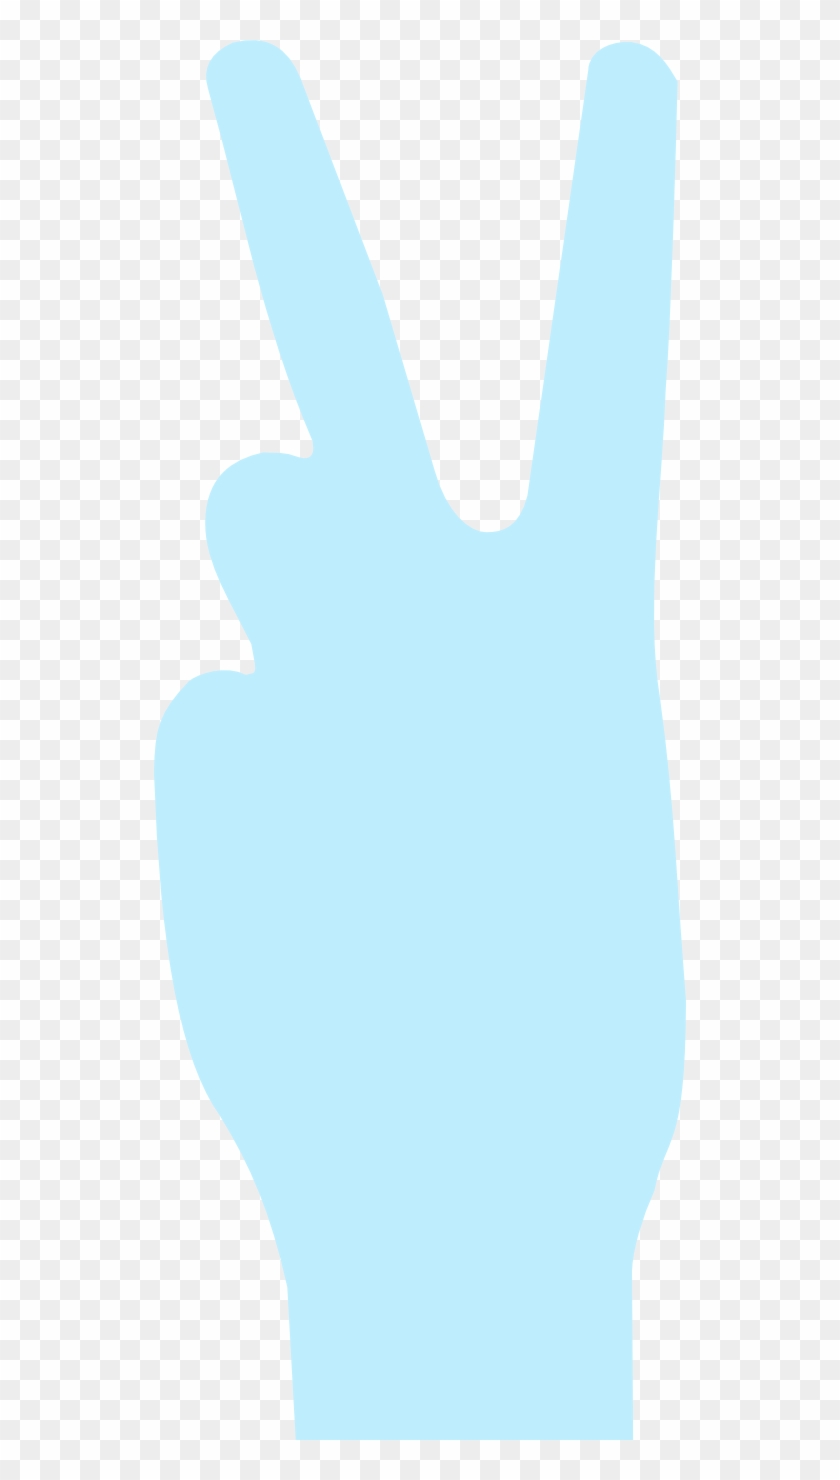 Svg Peacesymbol - - Clip Art #1167748